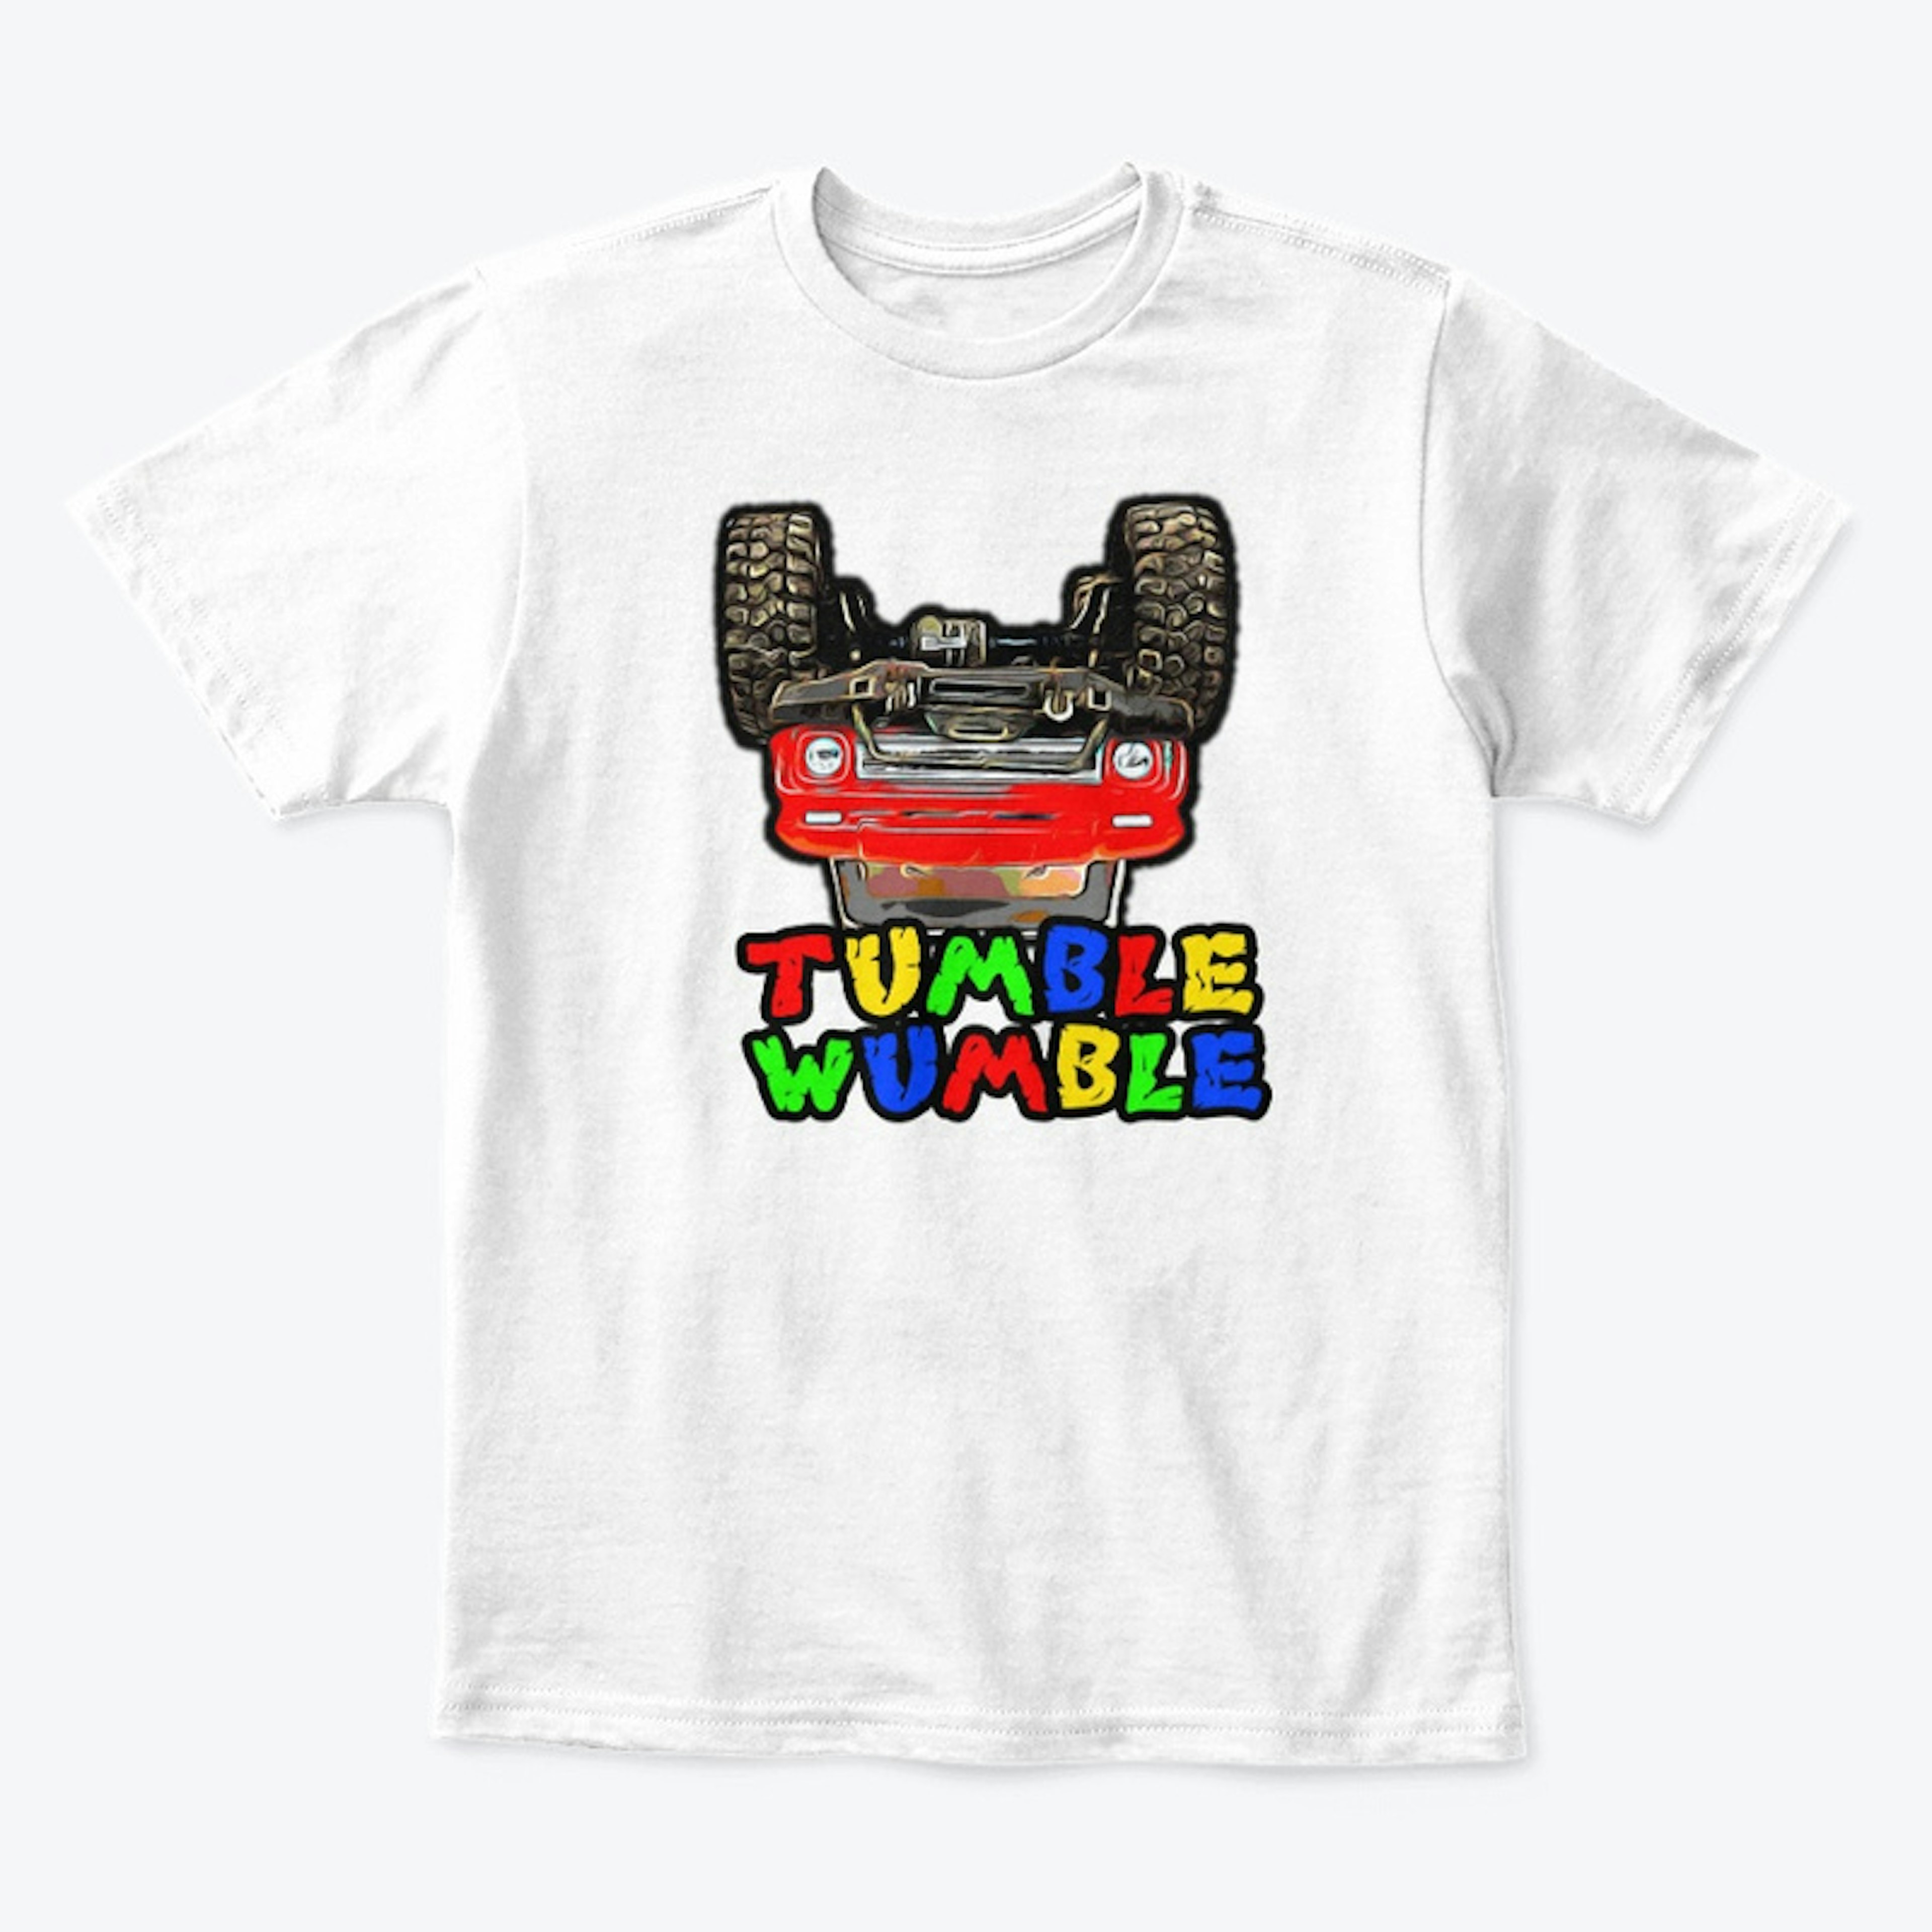 Tumble Wumble Tee-Shirt 